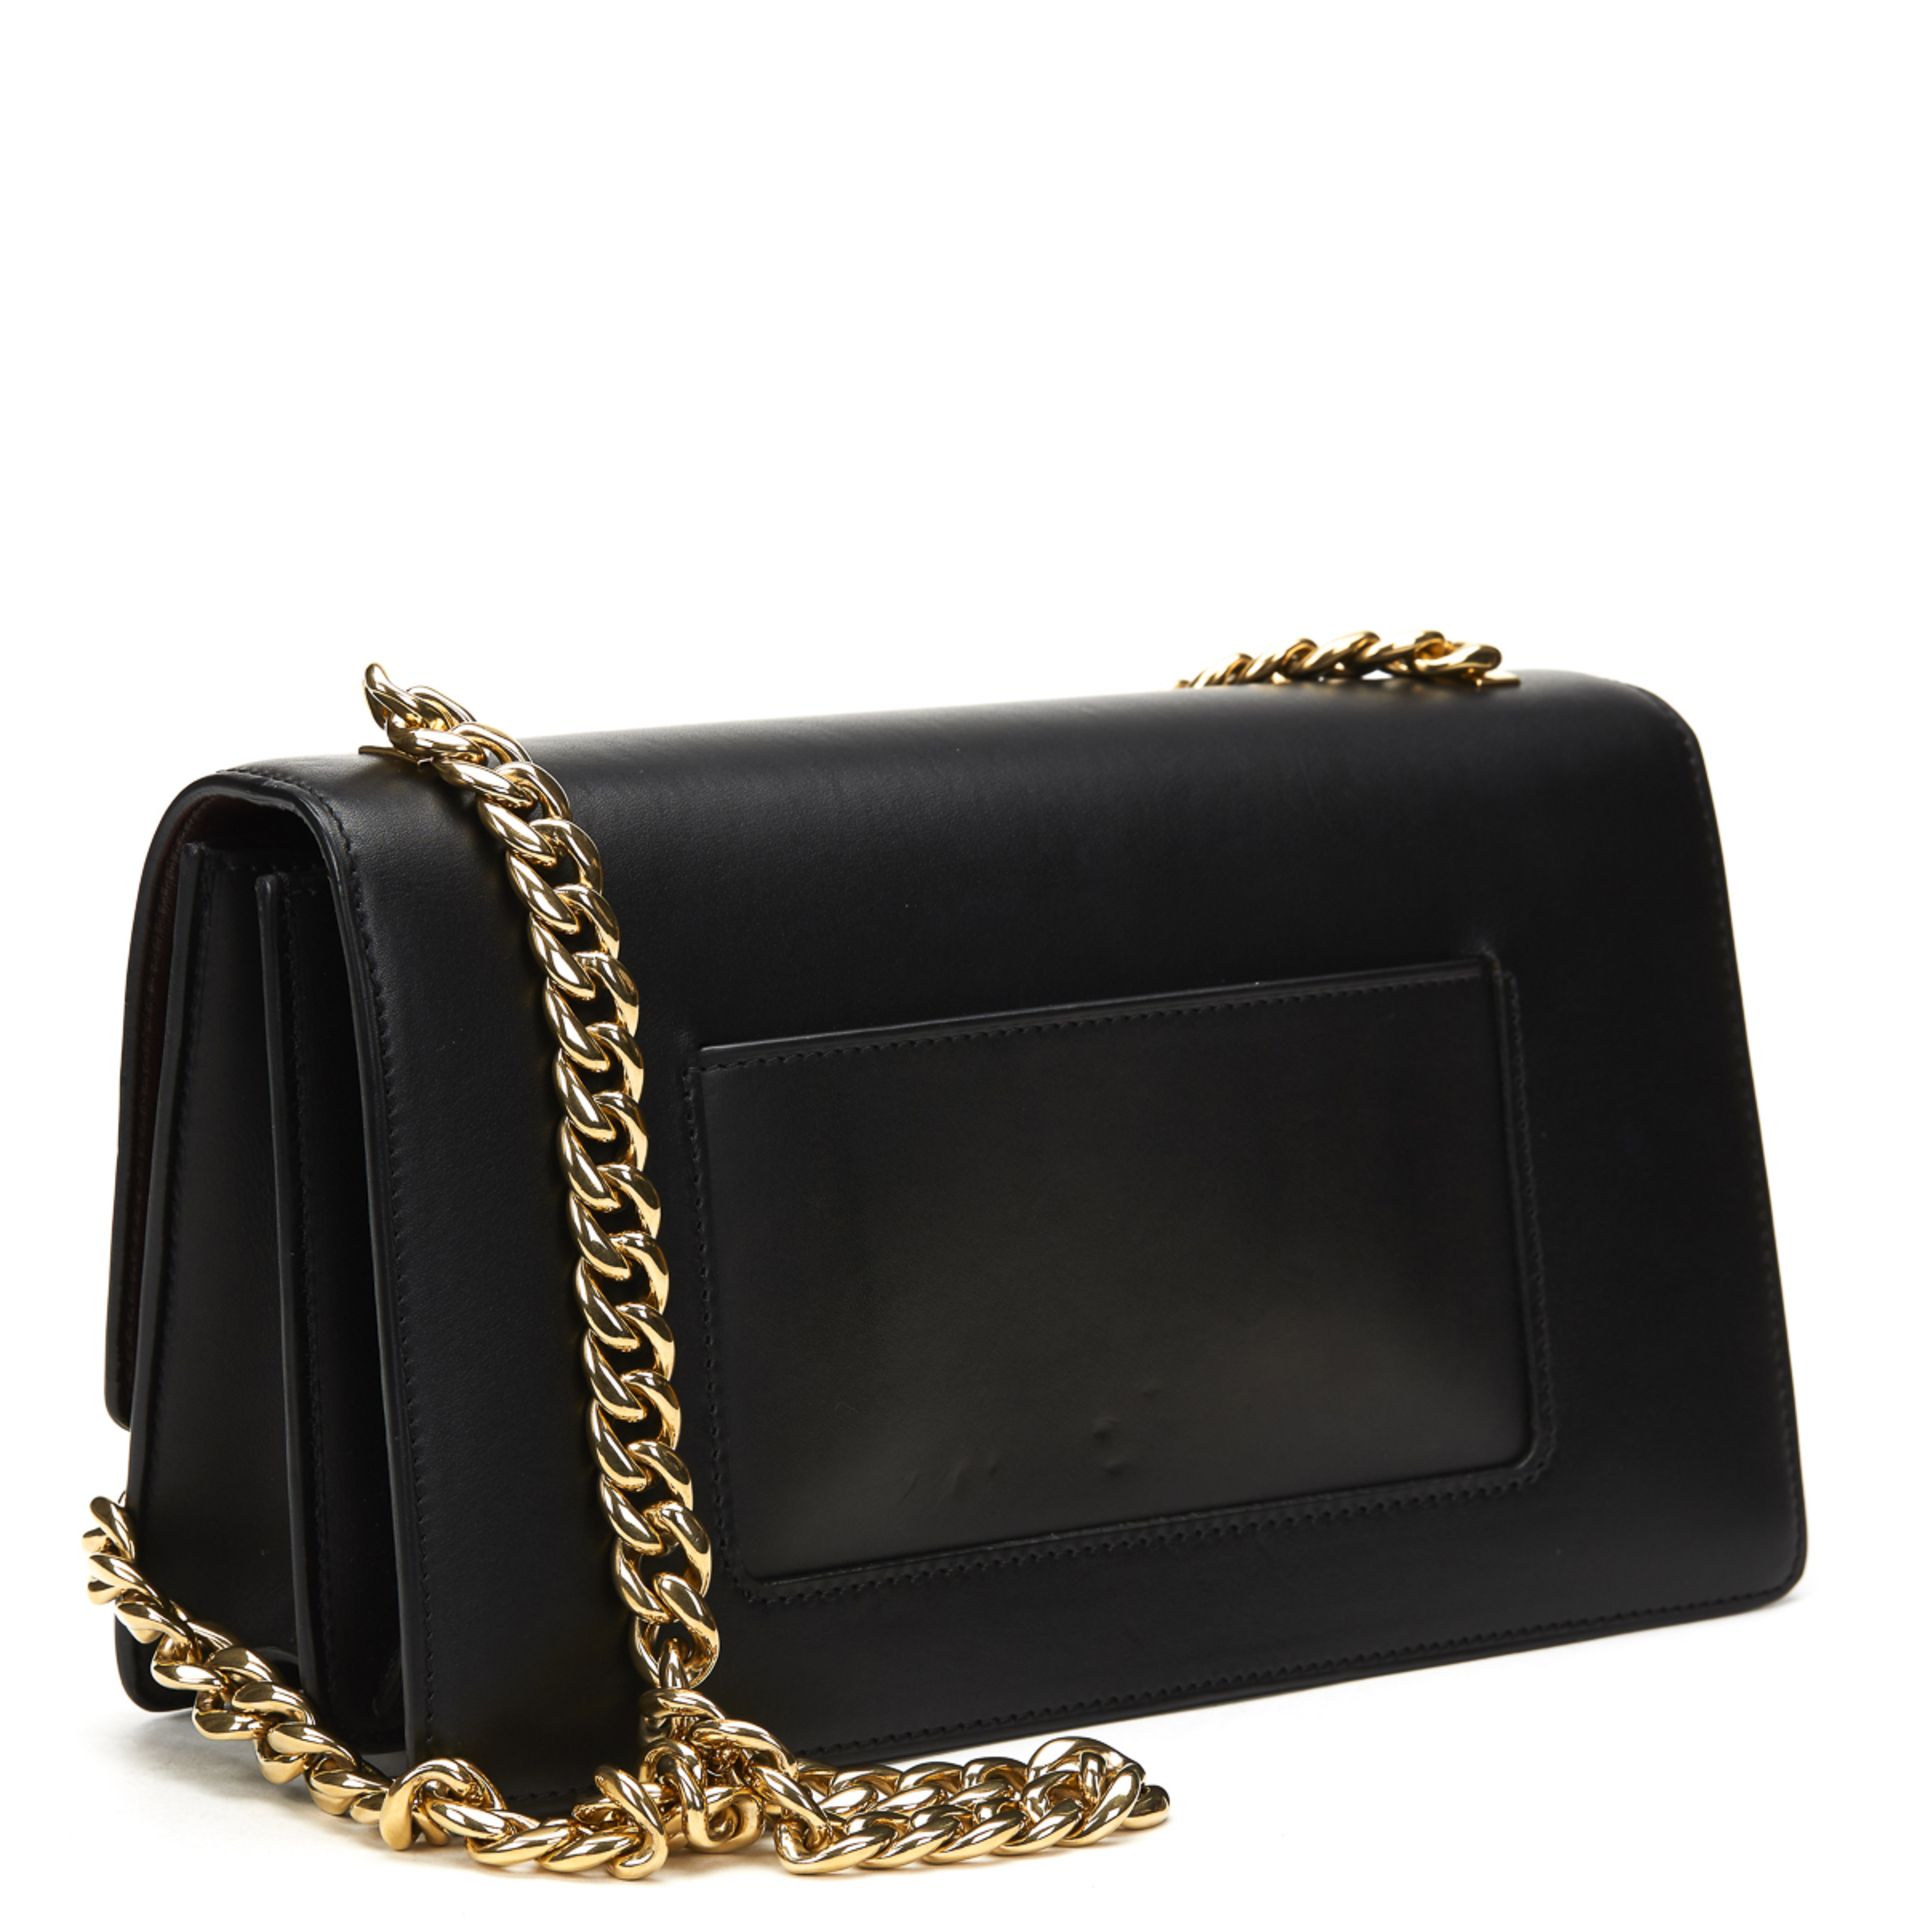 CELINE Case Flap Bag , - Black Smooth Leather Case Flap Bag   TYPE Shoulder SERIAL NUMBER F-CE- - Image 3 of 12